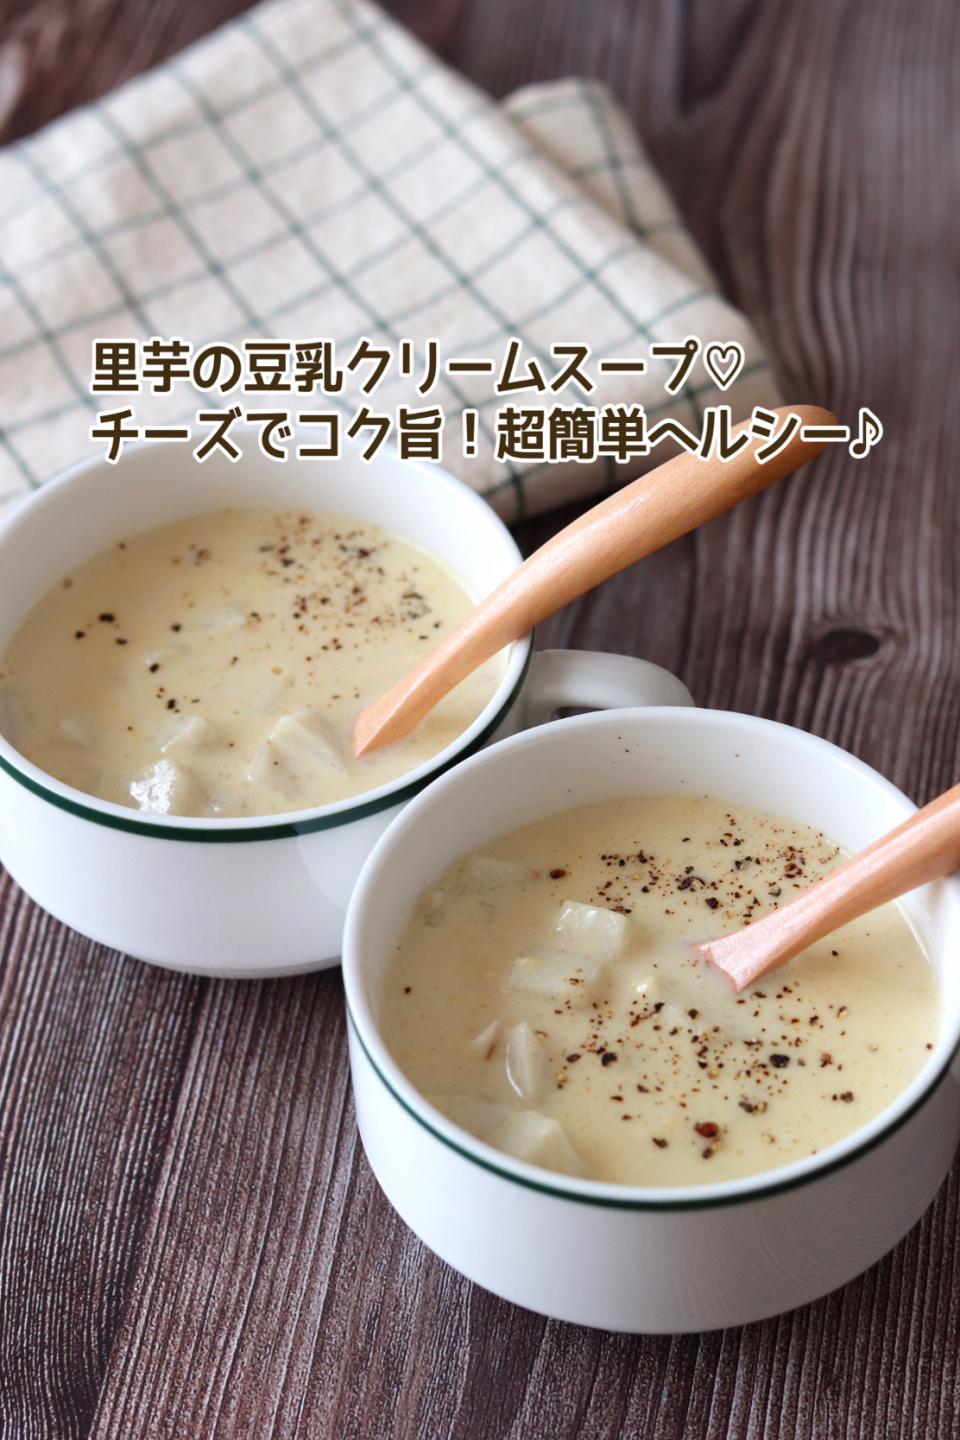 🆔455191                                                              #里芋の豆乳クリームスープ 💕